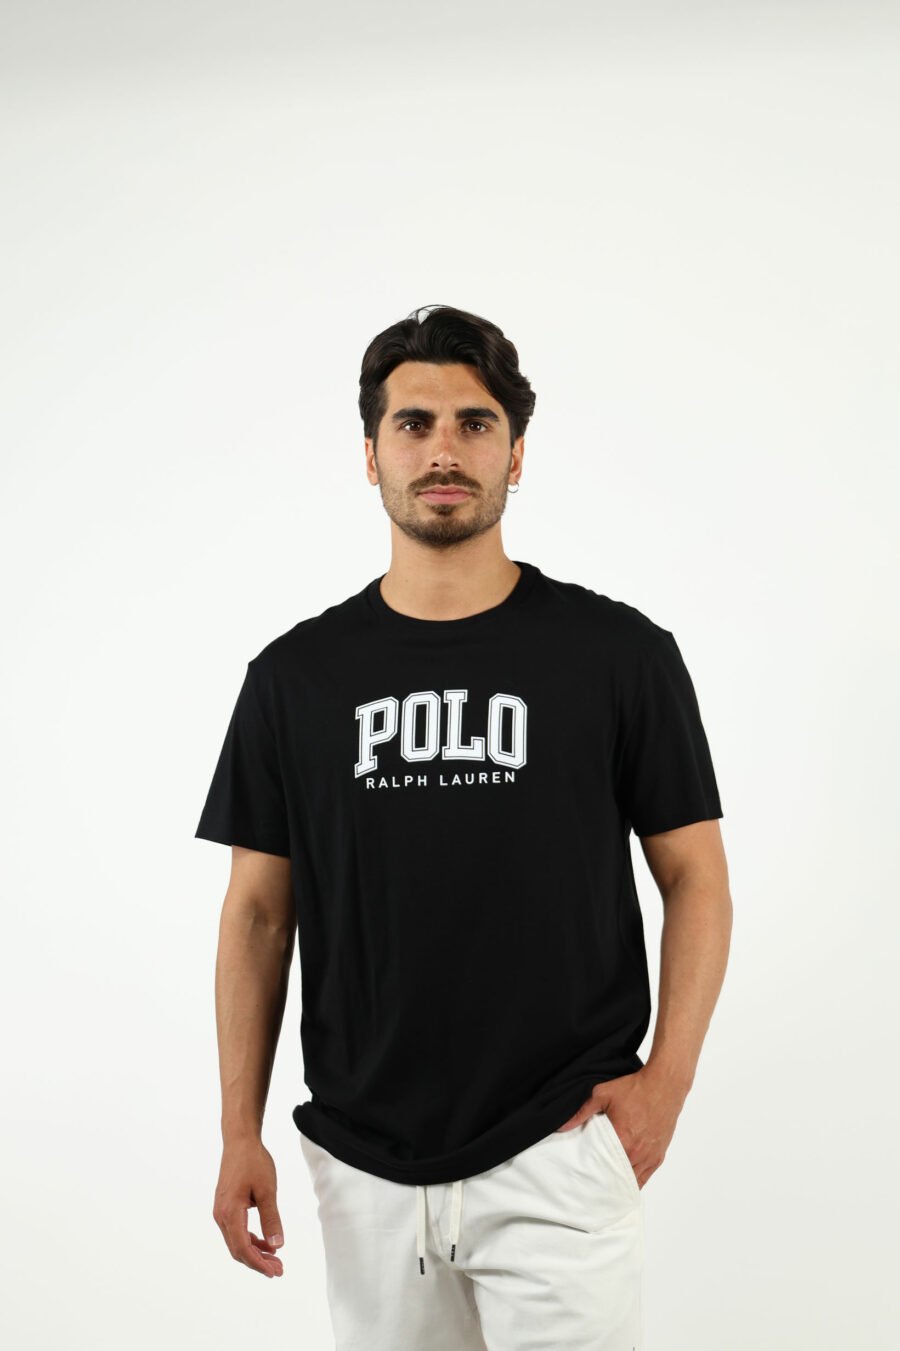 Camiseta negra con maxilogo "polo" en blanco - number14018